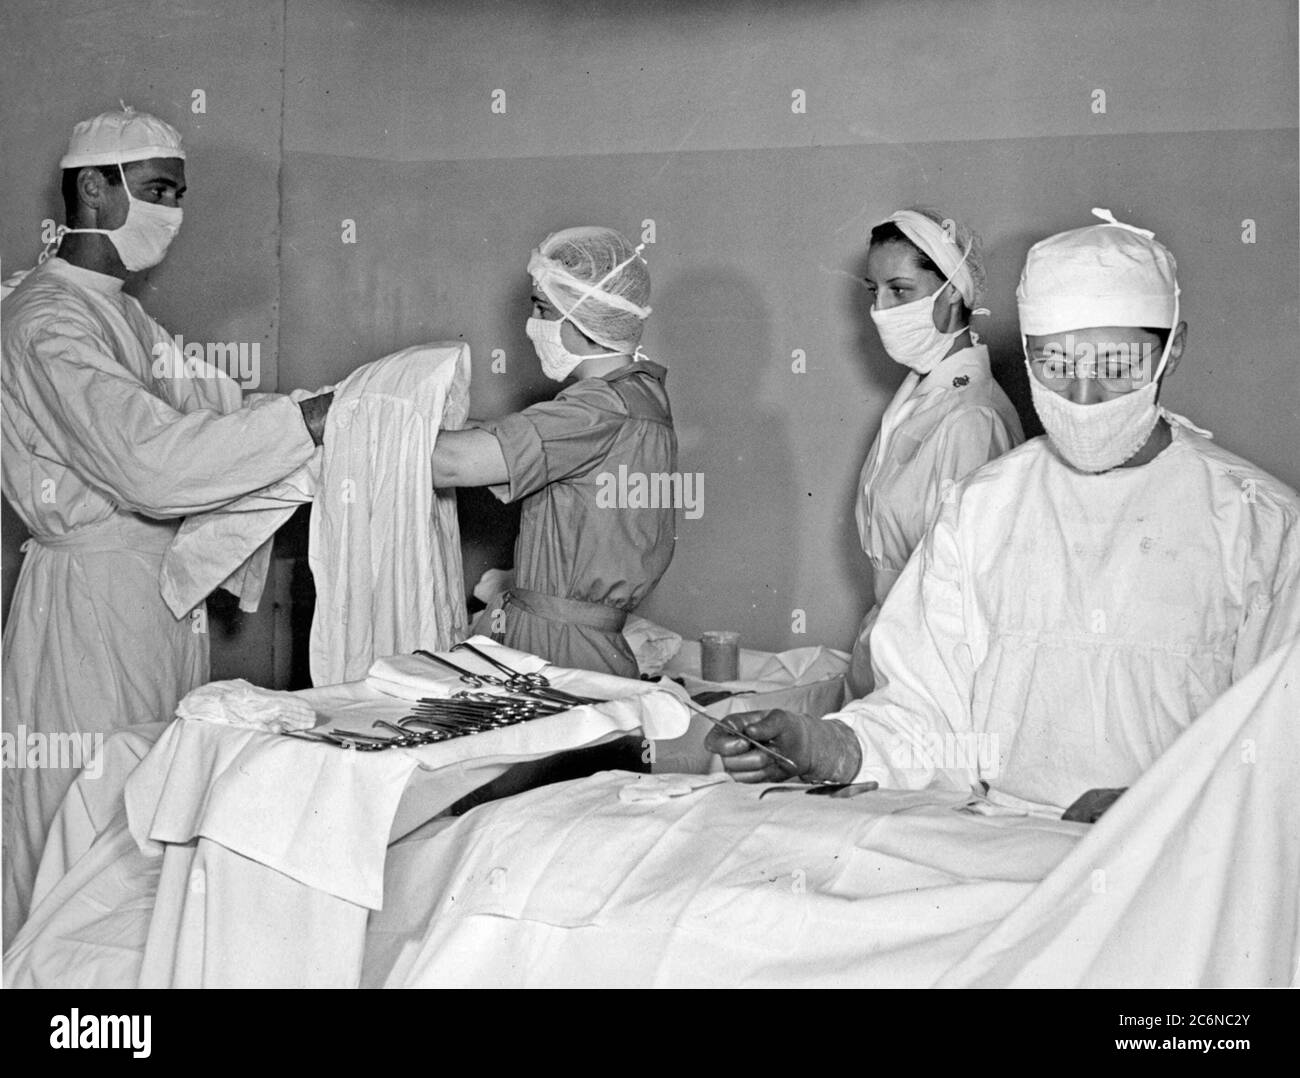 Les femmes acceptées pour le service d'urgence bénévole (WAVES) reçoivent une formation de la part des conseillers de l'hôpital de Jacksonville le 26 juillet 1943. WAVES a permis à Corpmen de se déployer pendant la Seconde Guerre mondiale (Photo officielle de la marine américaine). Banque D'Images